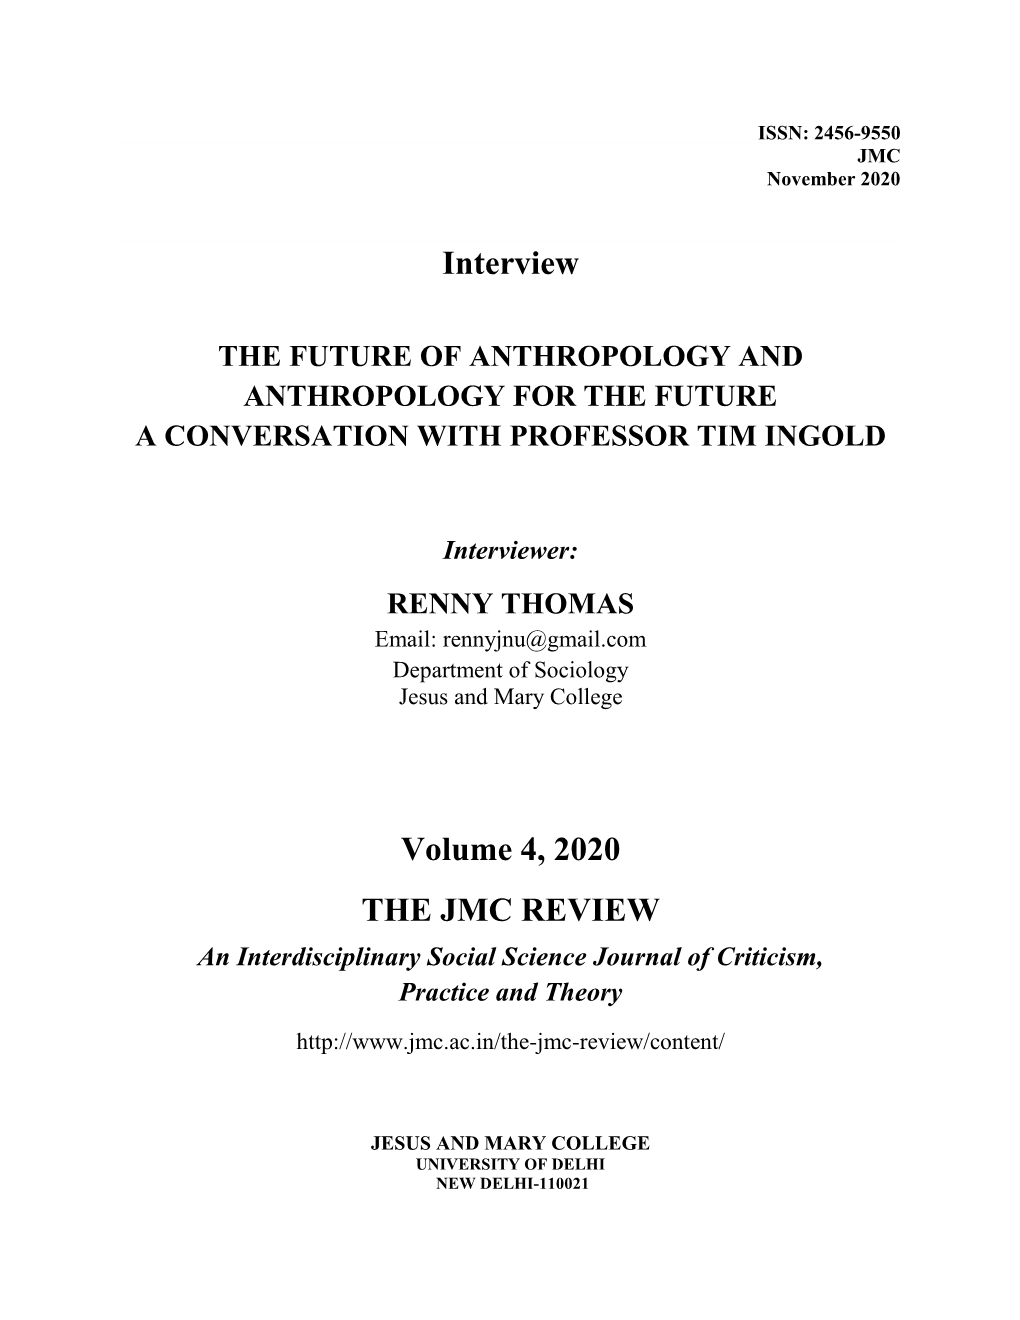 The JMC Review, Vol. IV 2020